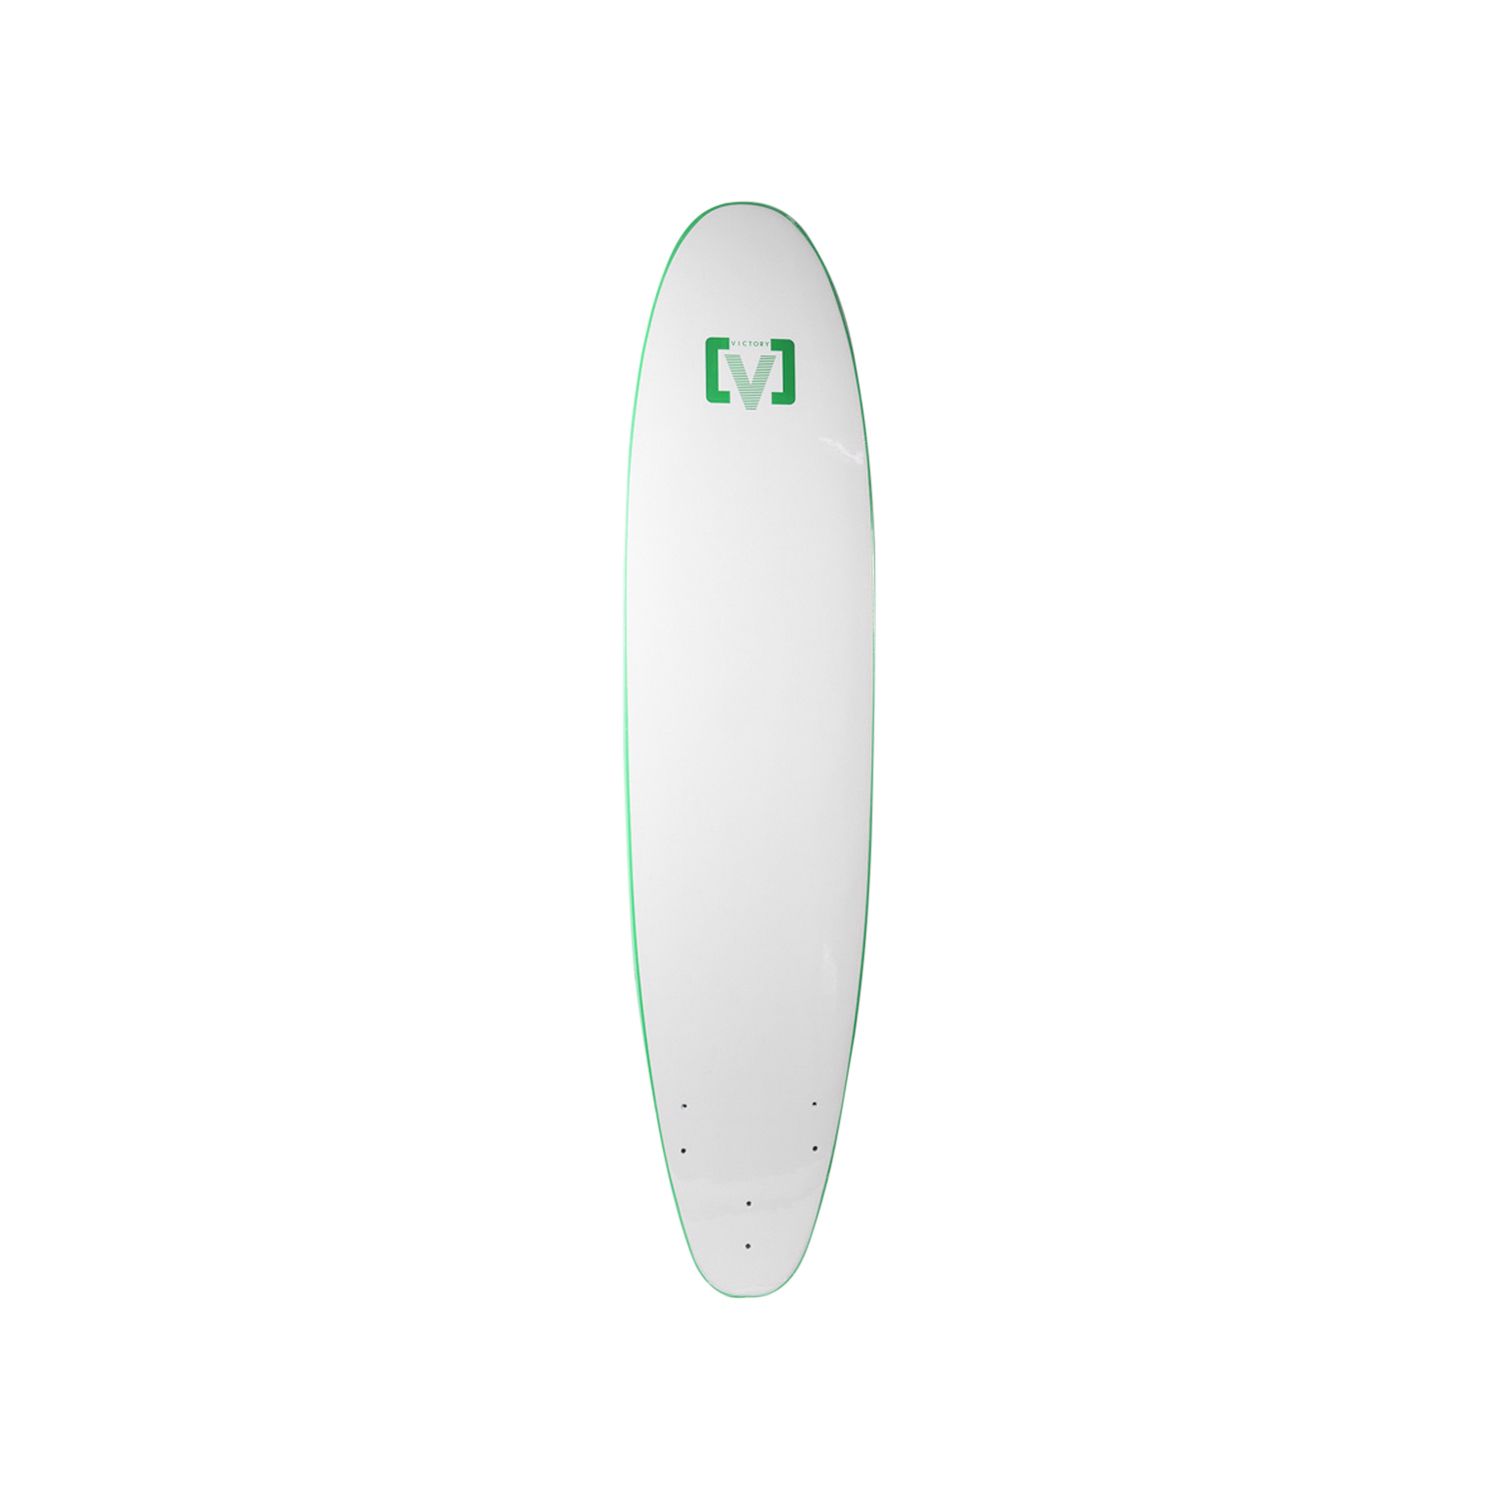 Surf en mousse Modèle N 8' Victory Surfboard jaune dessus